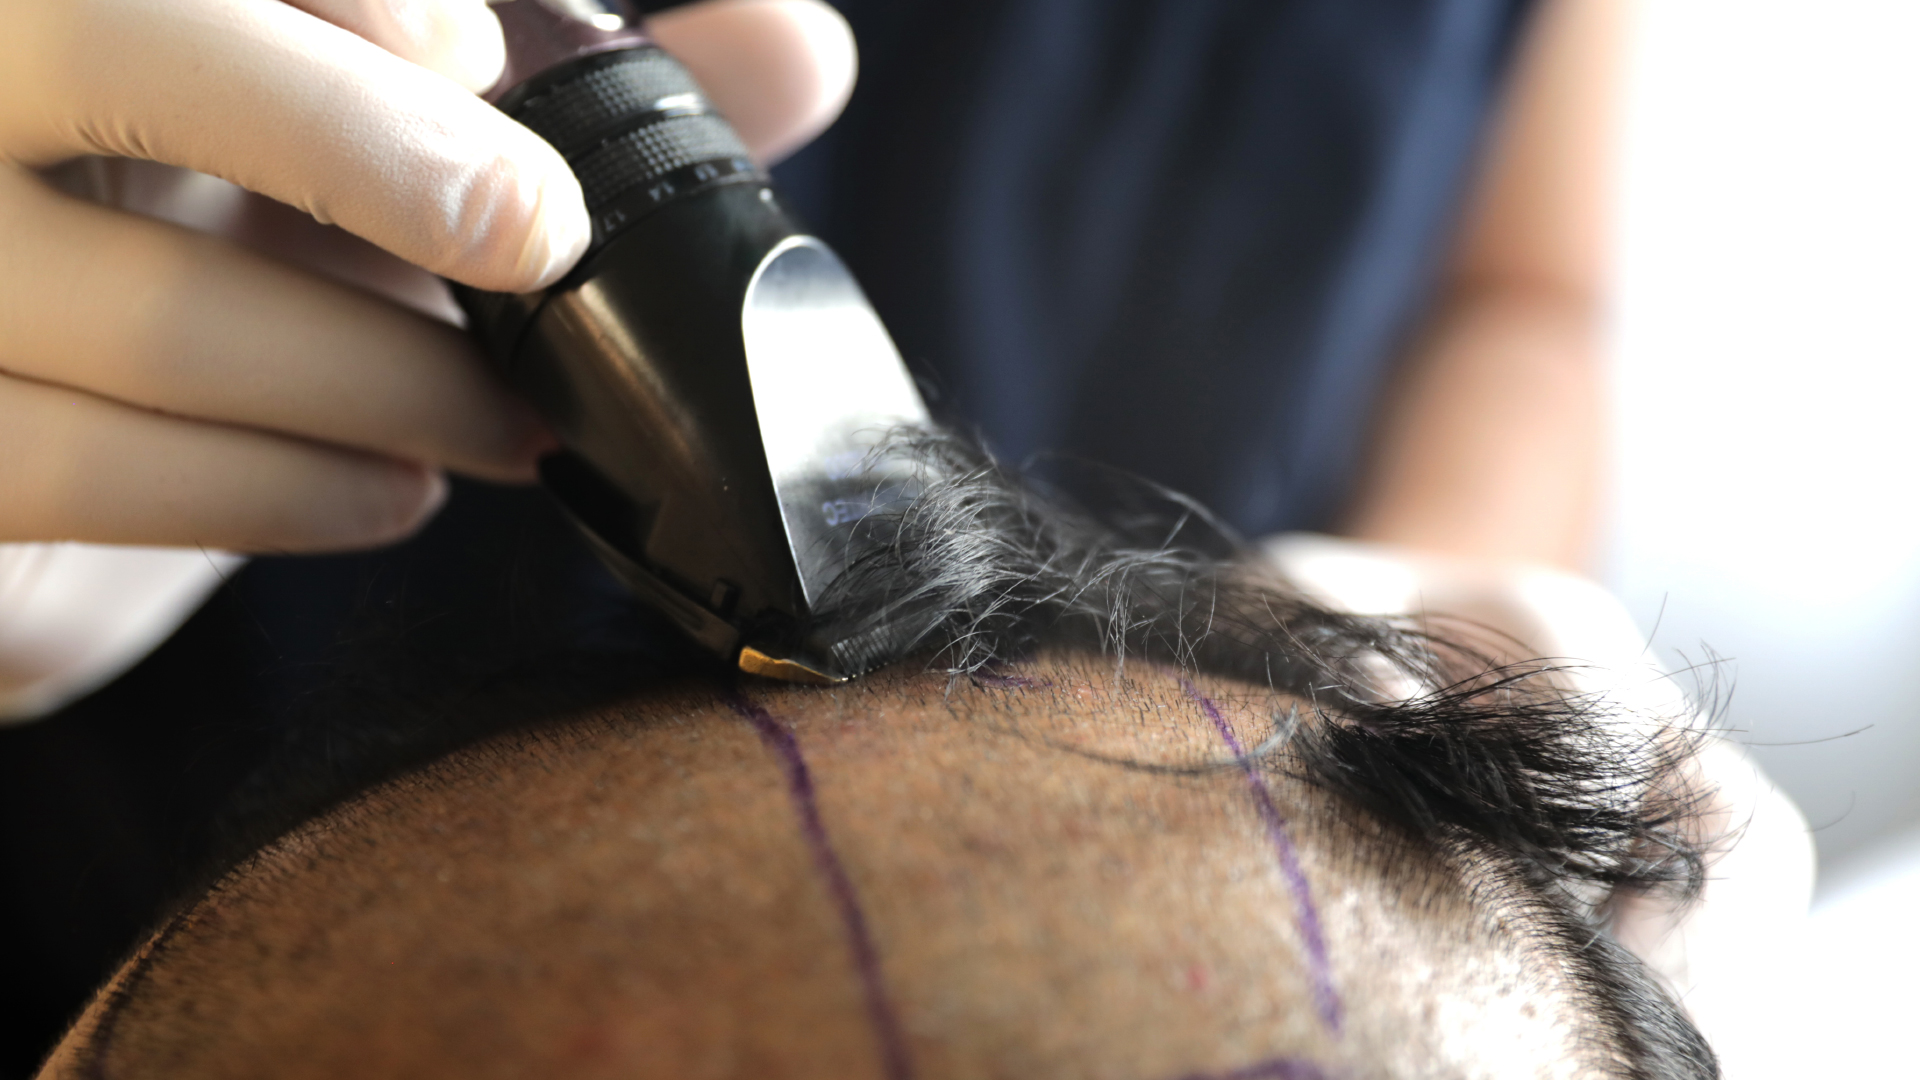 une personne se fait raser les cheveux avant une greffe capillaire